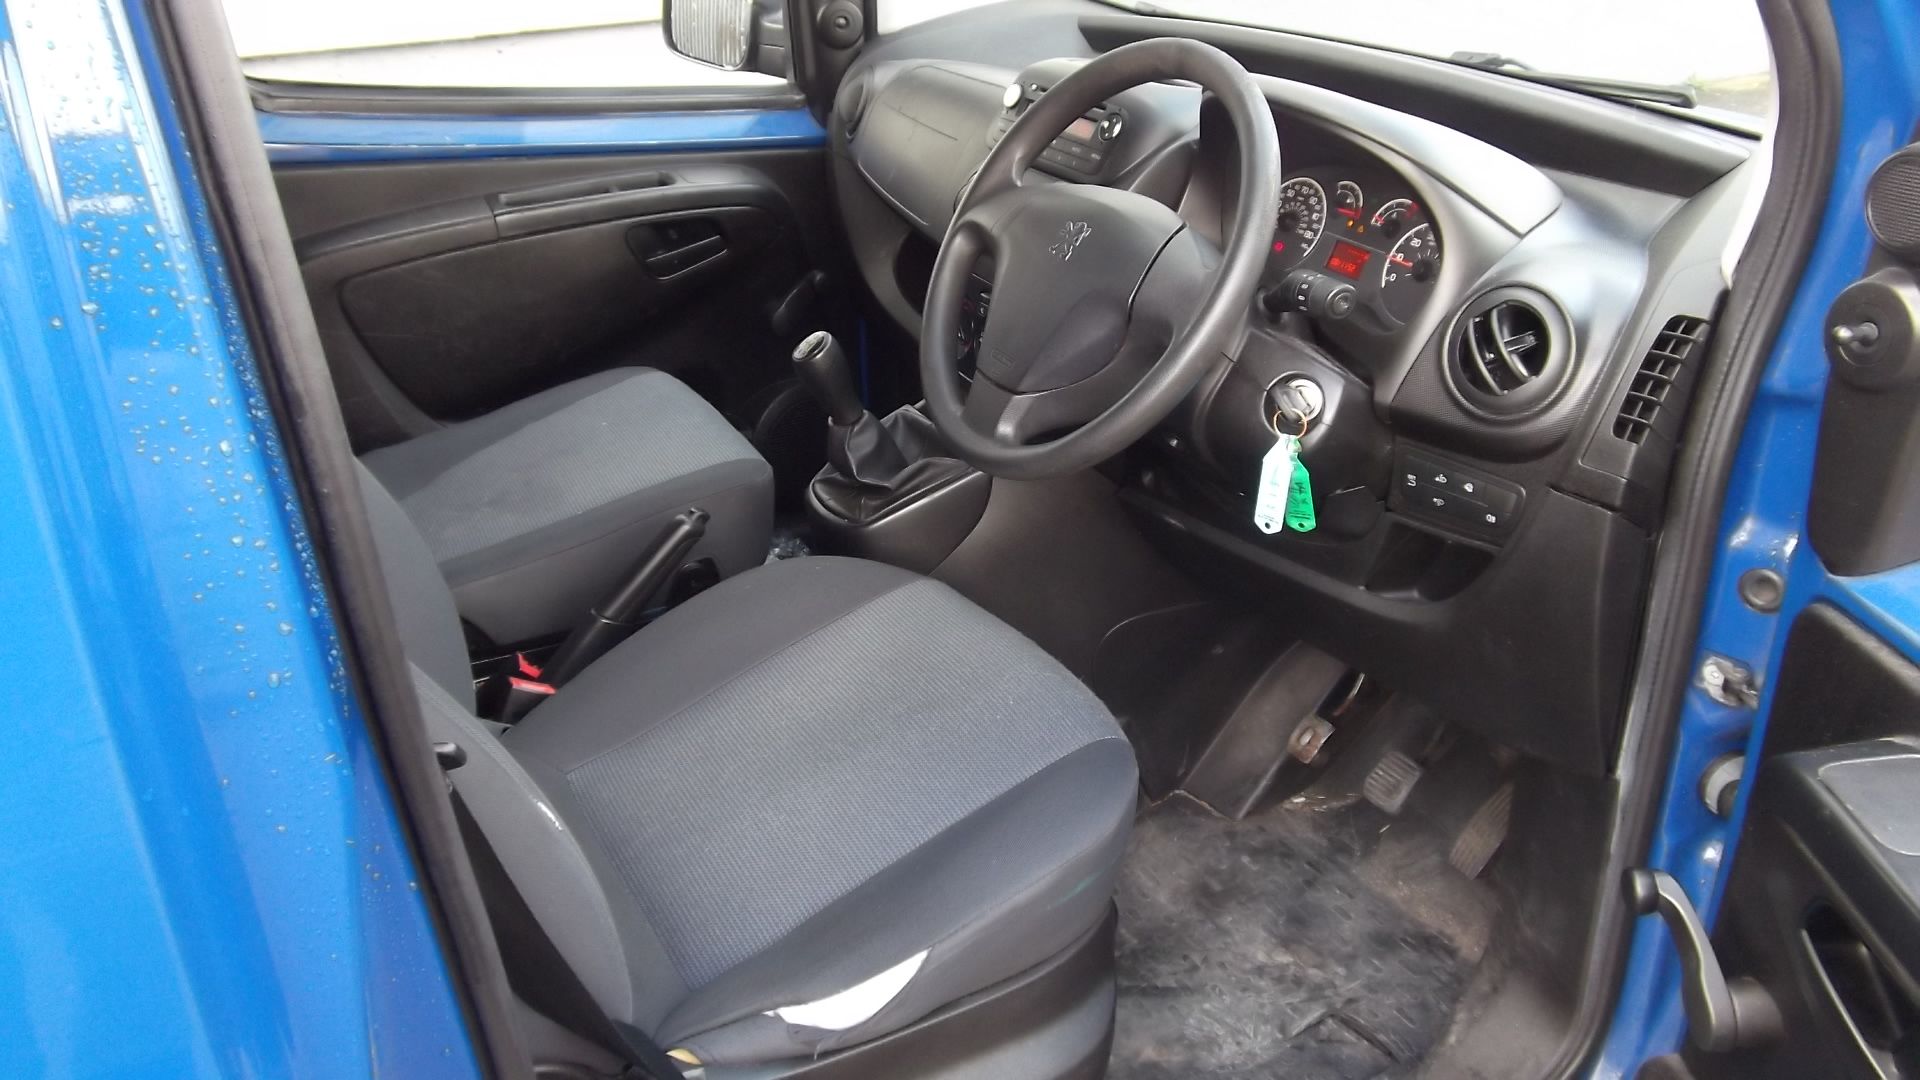 2015 Peugeot Bipper 1.3 Hdi Professional Panel Van - Image 4 of 13